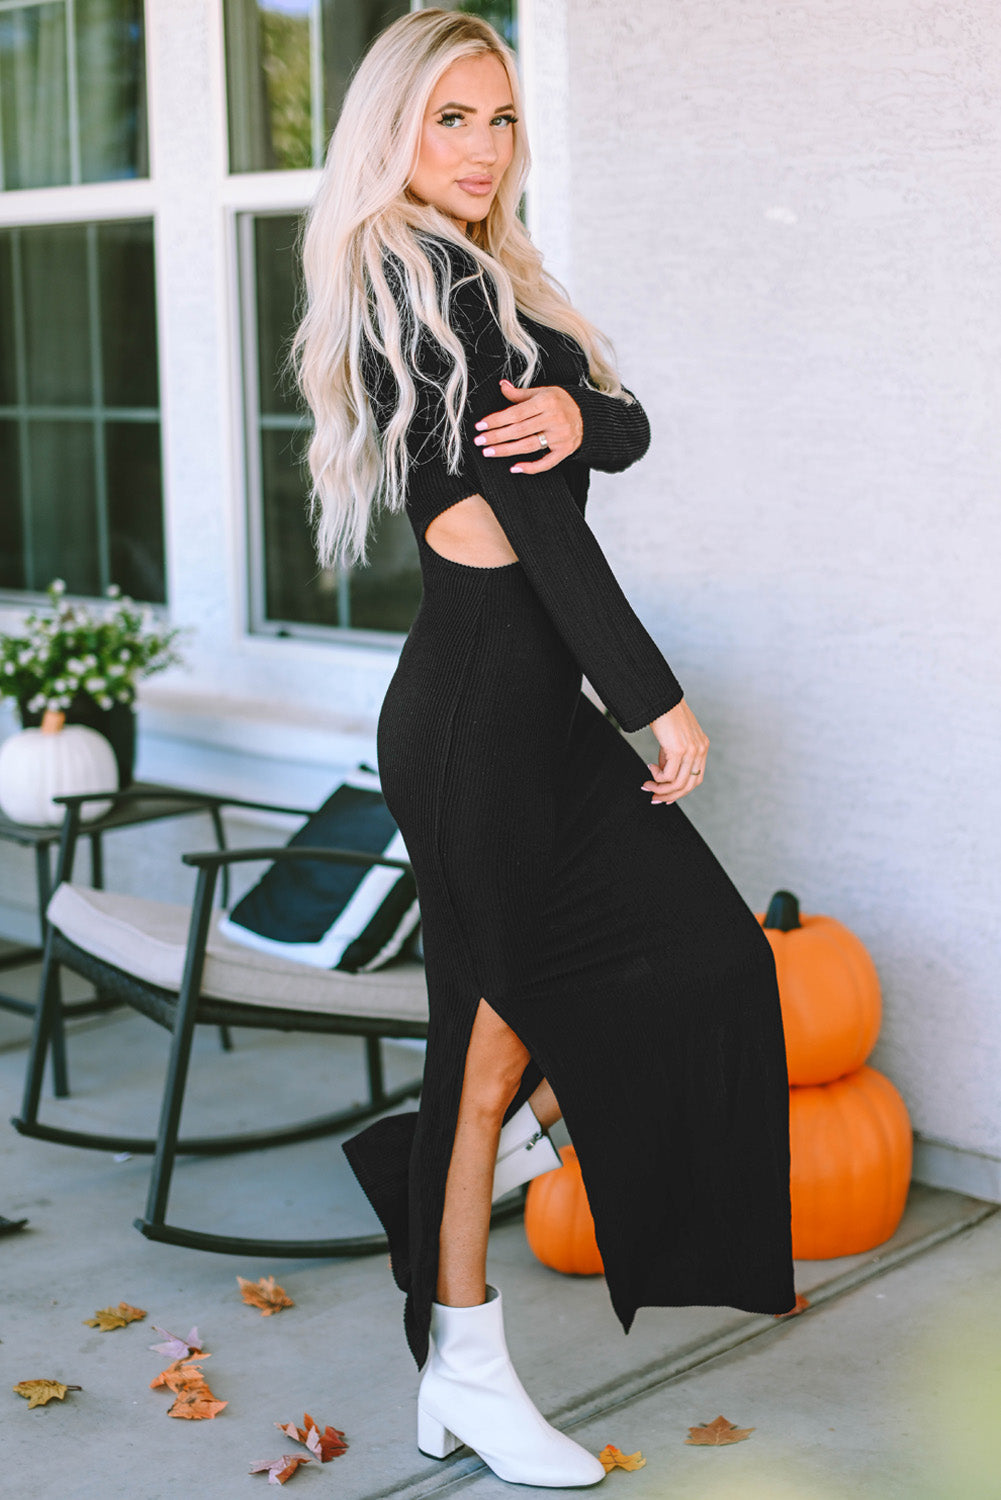 Schwarzes, geripptes, langärmliges Kleid mit verdrehtem Ausschnitt